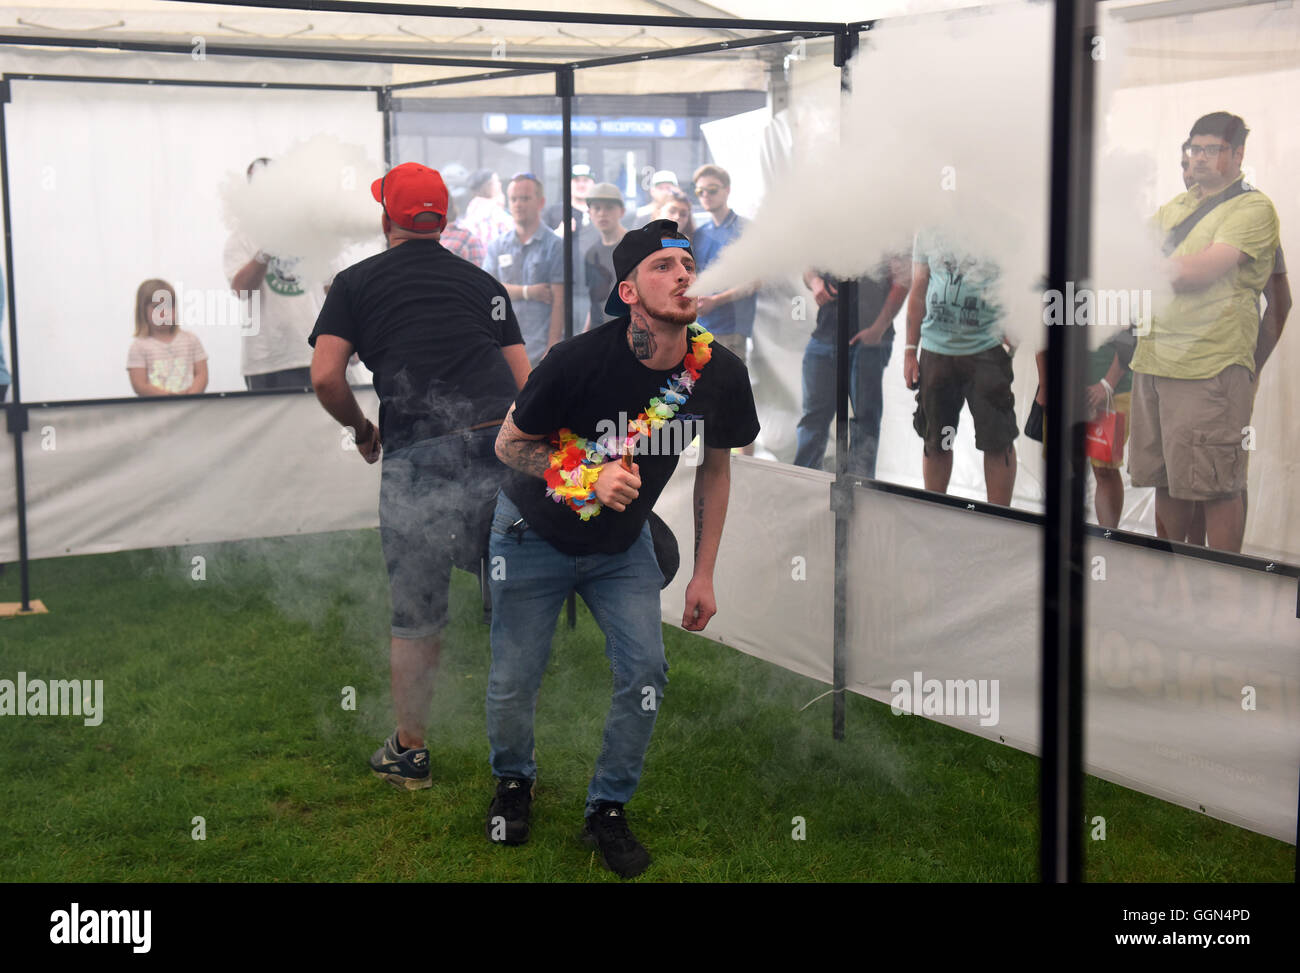 Vapefest das Festival für dampfen-Enthusiasten bei Shrewsbury Uk 6. August 2016. Die "Schlacht der Wolken" zwei Dampfer im Wettbewerb um die größten Vape Cloud ausatmen. Bildnachweis: David Bagnall/Alamy Live-Nachrichten Stockfoto